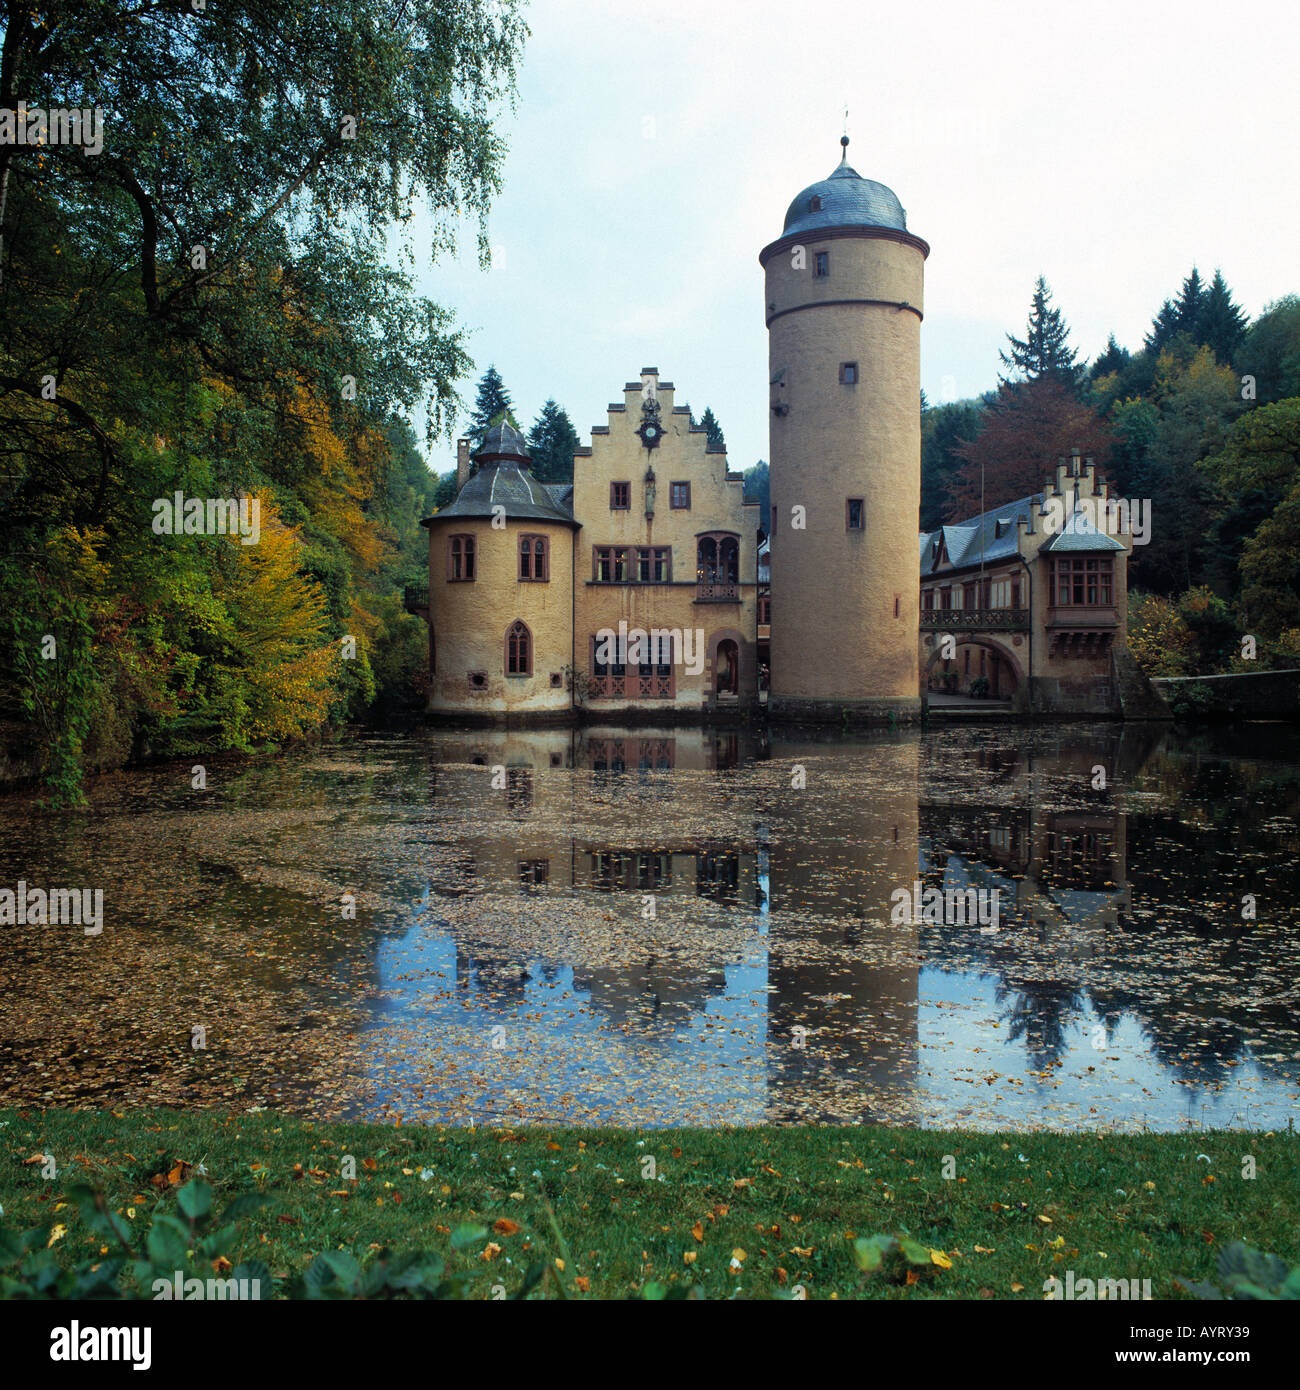 Wasserschloss Mespelbrunn, Herbstlaub auf dem Wasser, Mespelbrunn, Naturpark Bayerischer Spessart, Unterfranken, Bayern Stock Photo